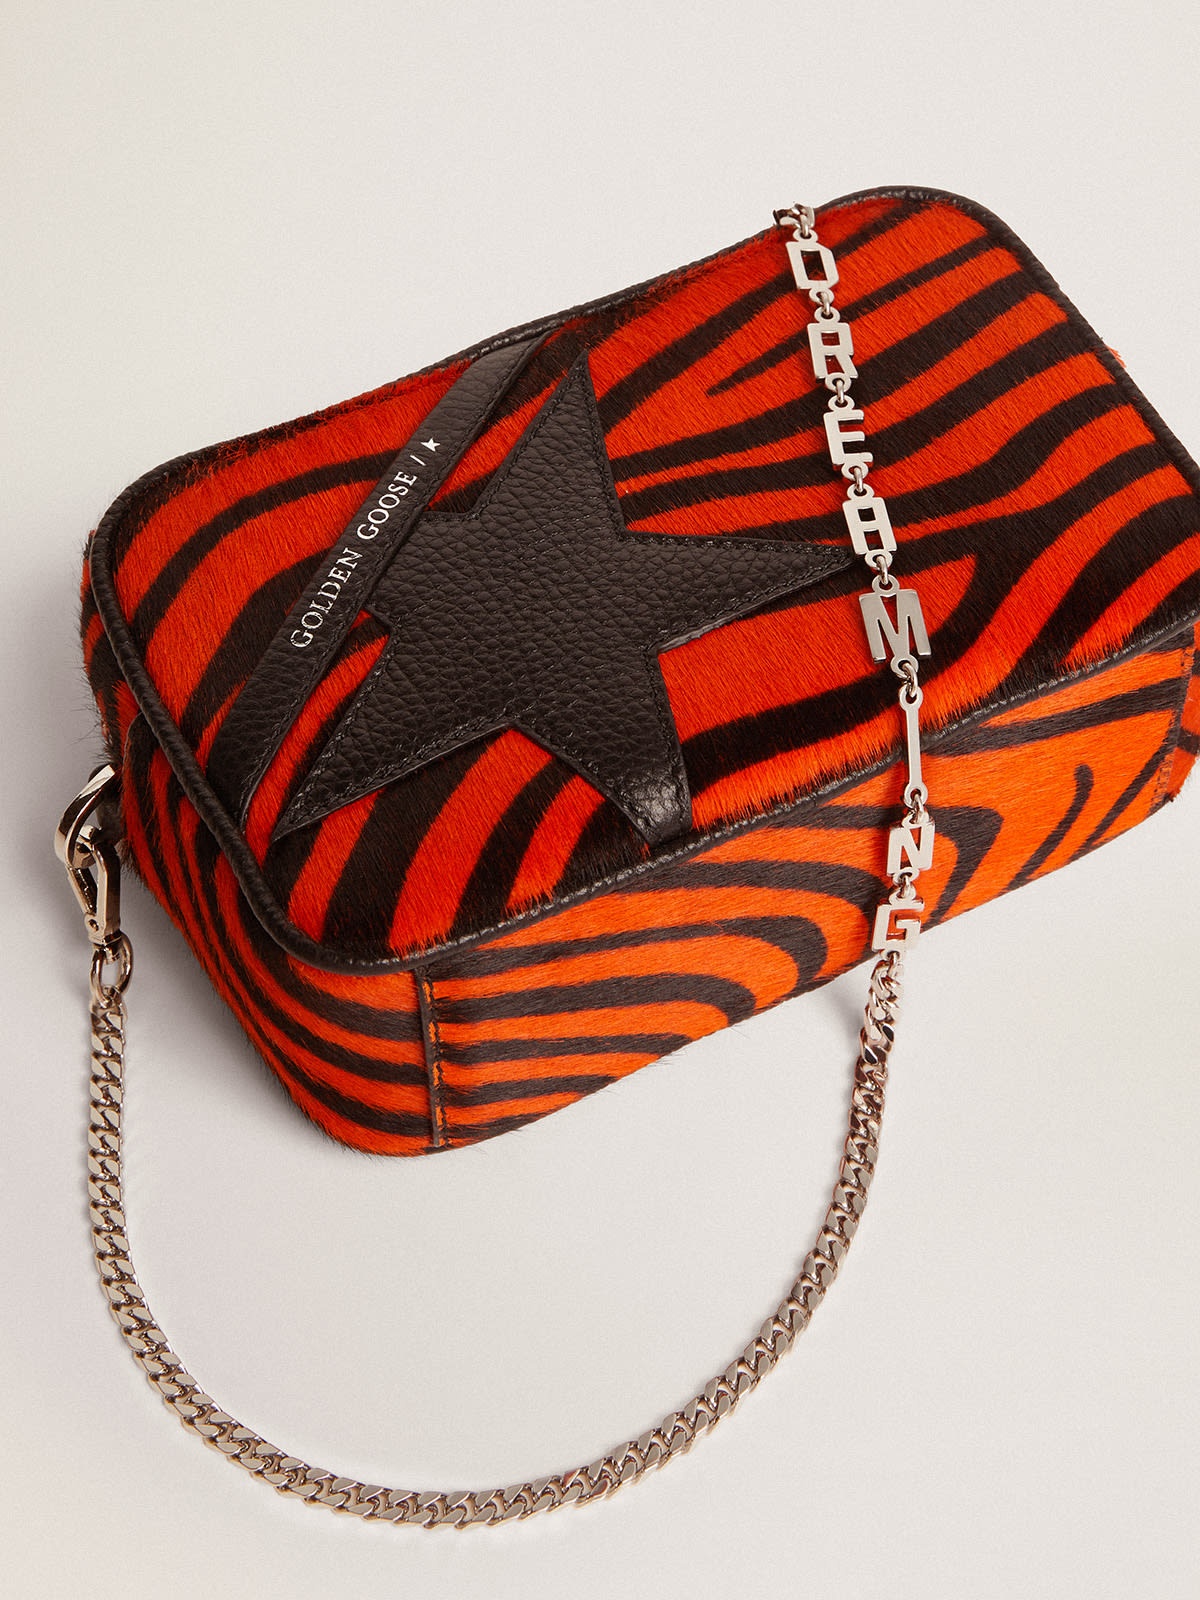 Mini Star Bag in orange tiger-print pony skin with black leather star - 5